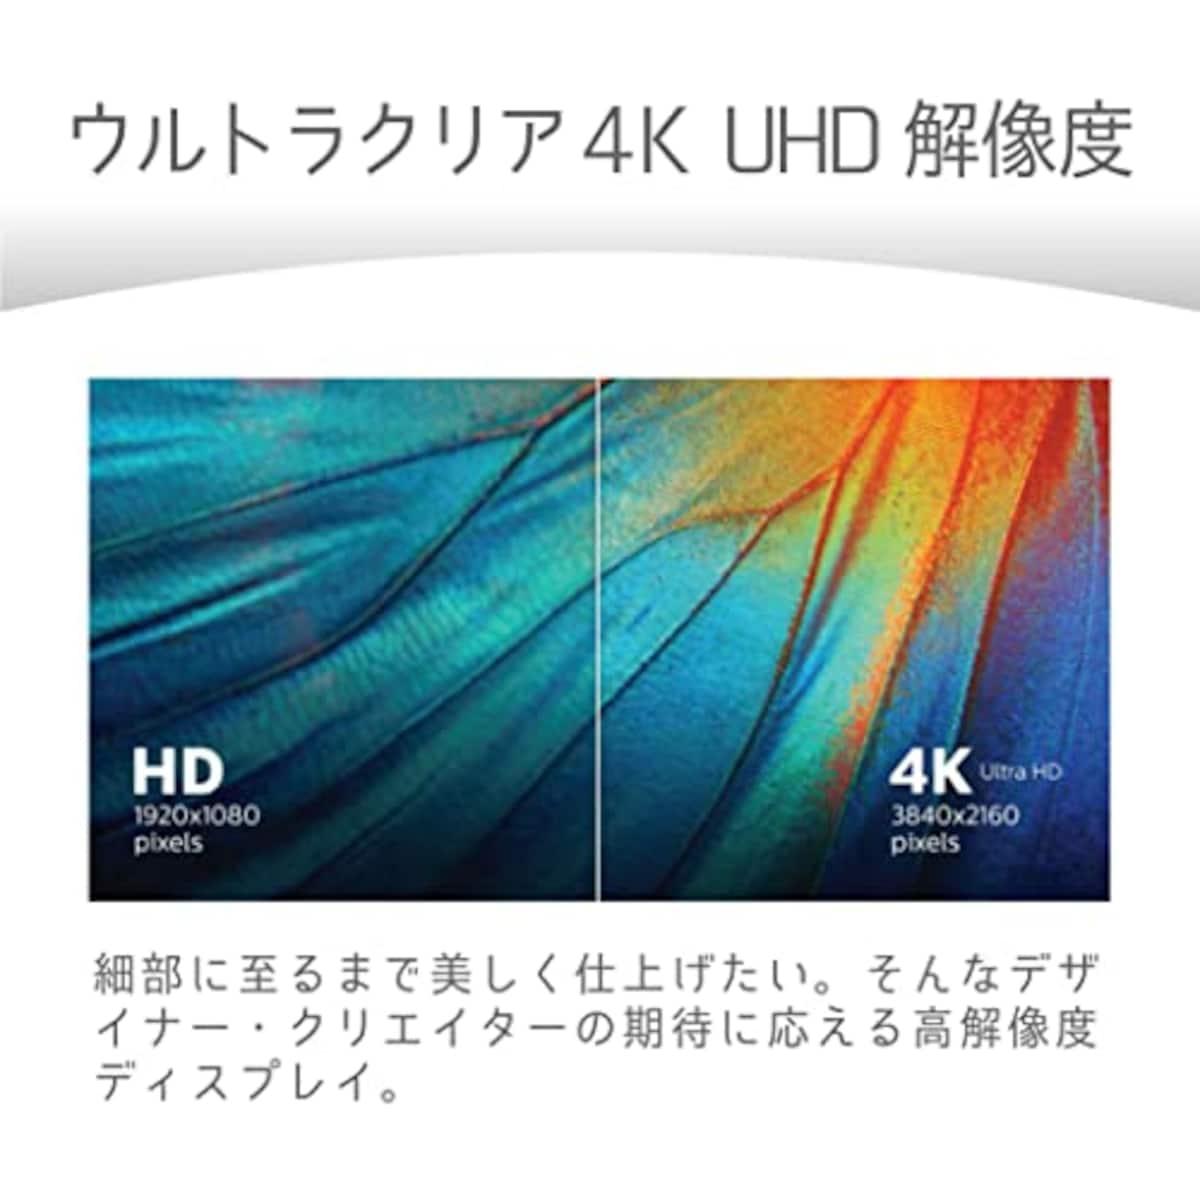  PHILIPS モニターディスプレイ 288E2A/11 (28インチ/IPS Technology/4K/5年保証/HDMI2.0x2,DisplayPort1.2x1/チルト/フレームレス/スピーカー)画像3 